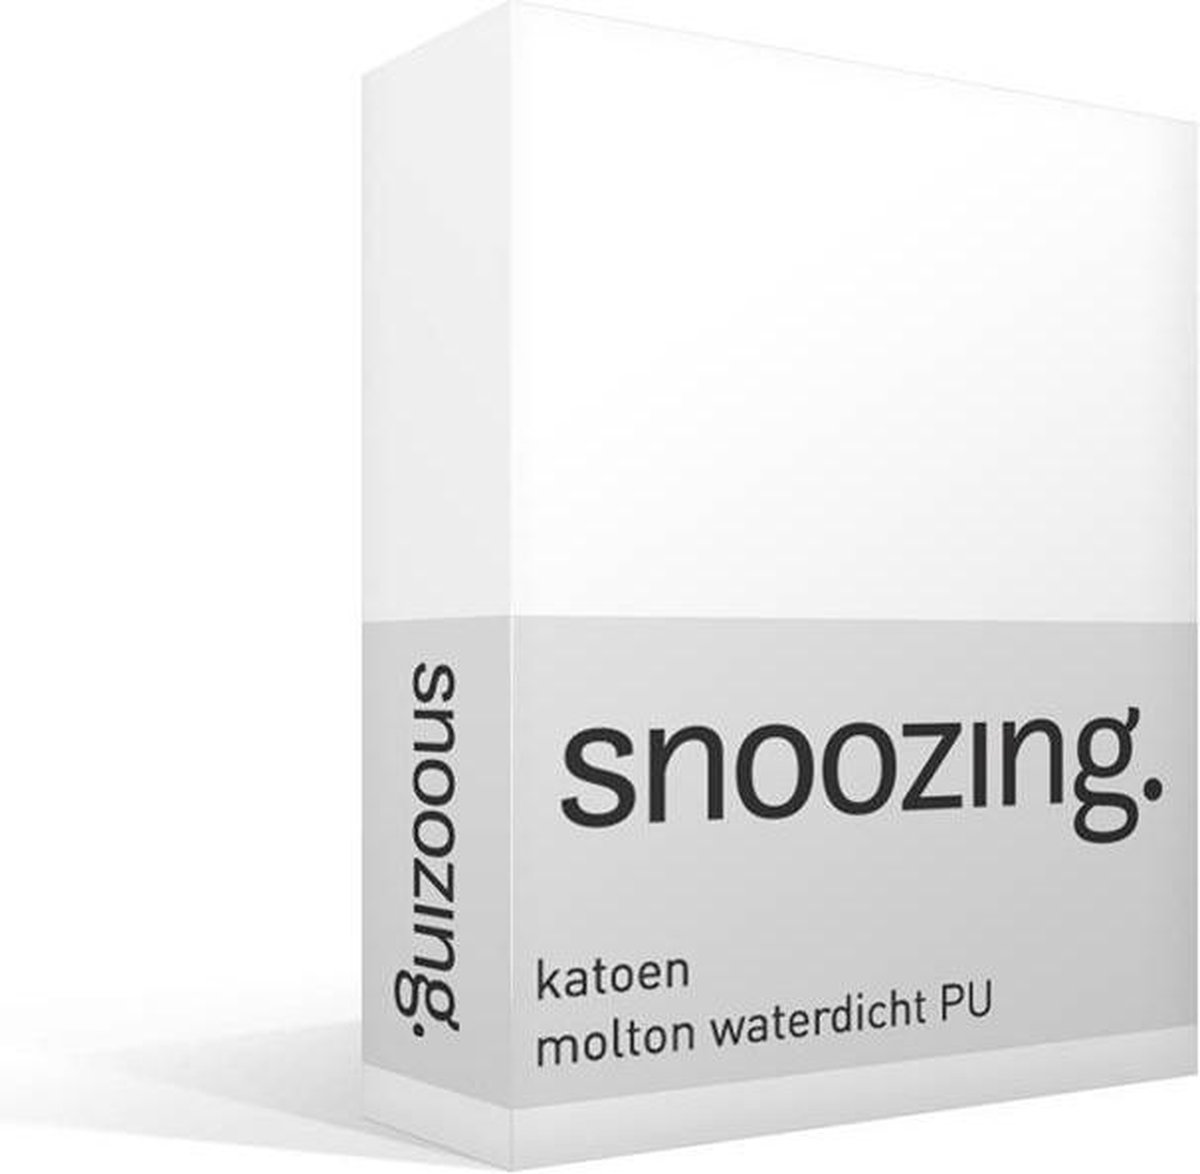 Snoozing Katoen Molton Waterdicht Pu Hoeslaken - 100% Katoen - 2-persoons (140x200 Cm) - - Wit